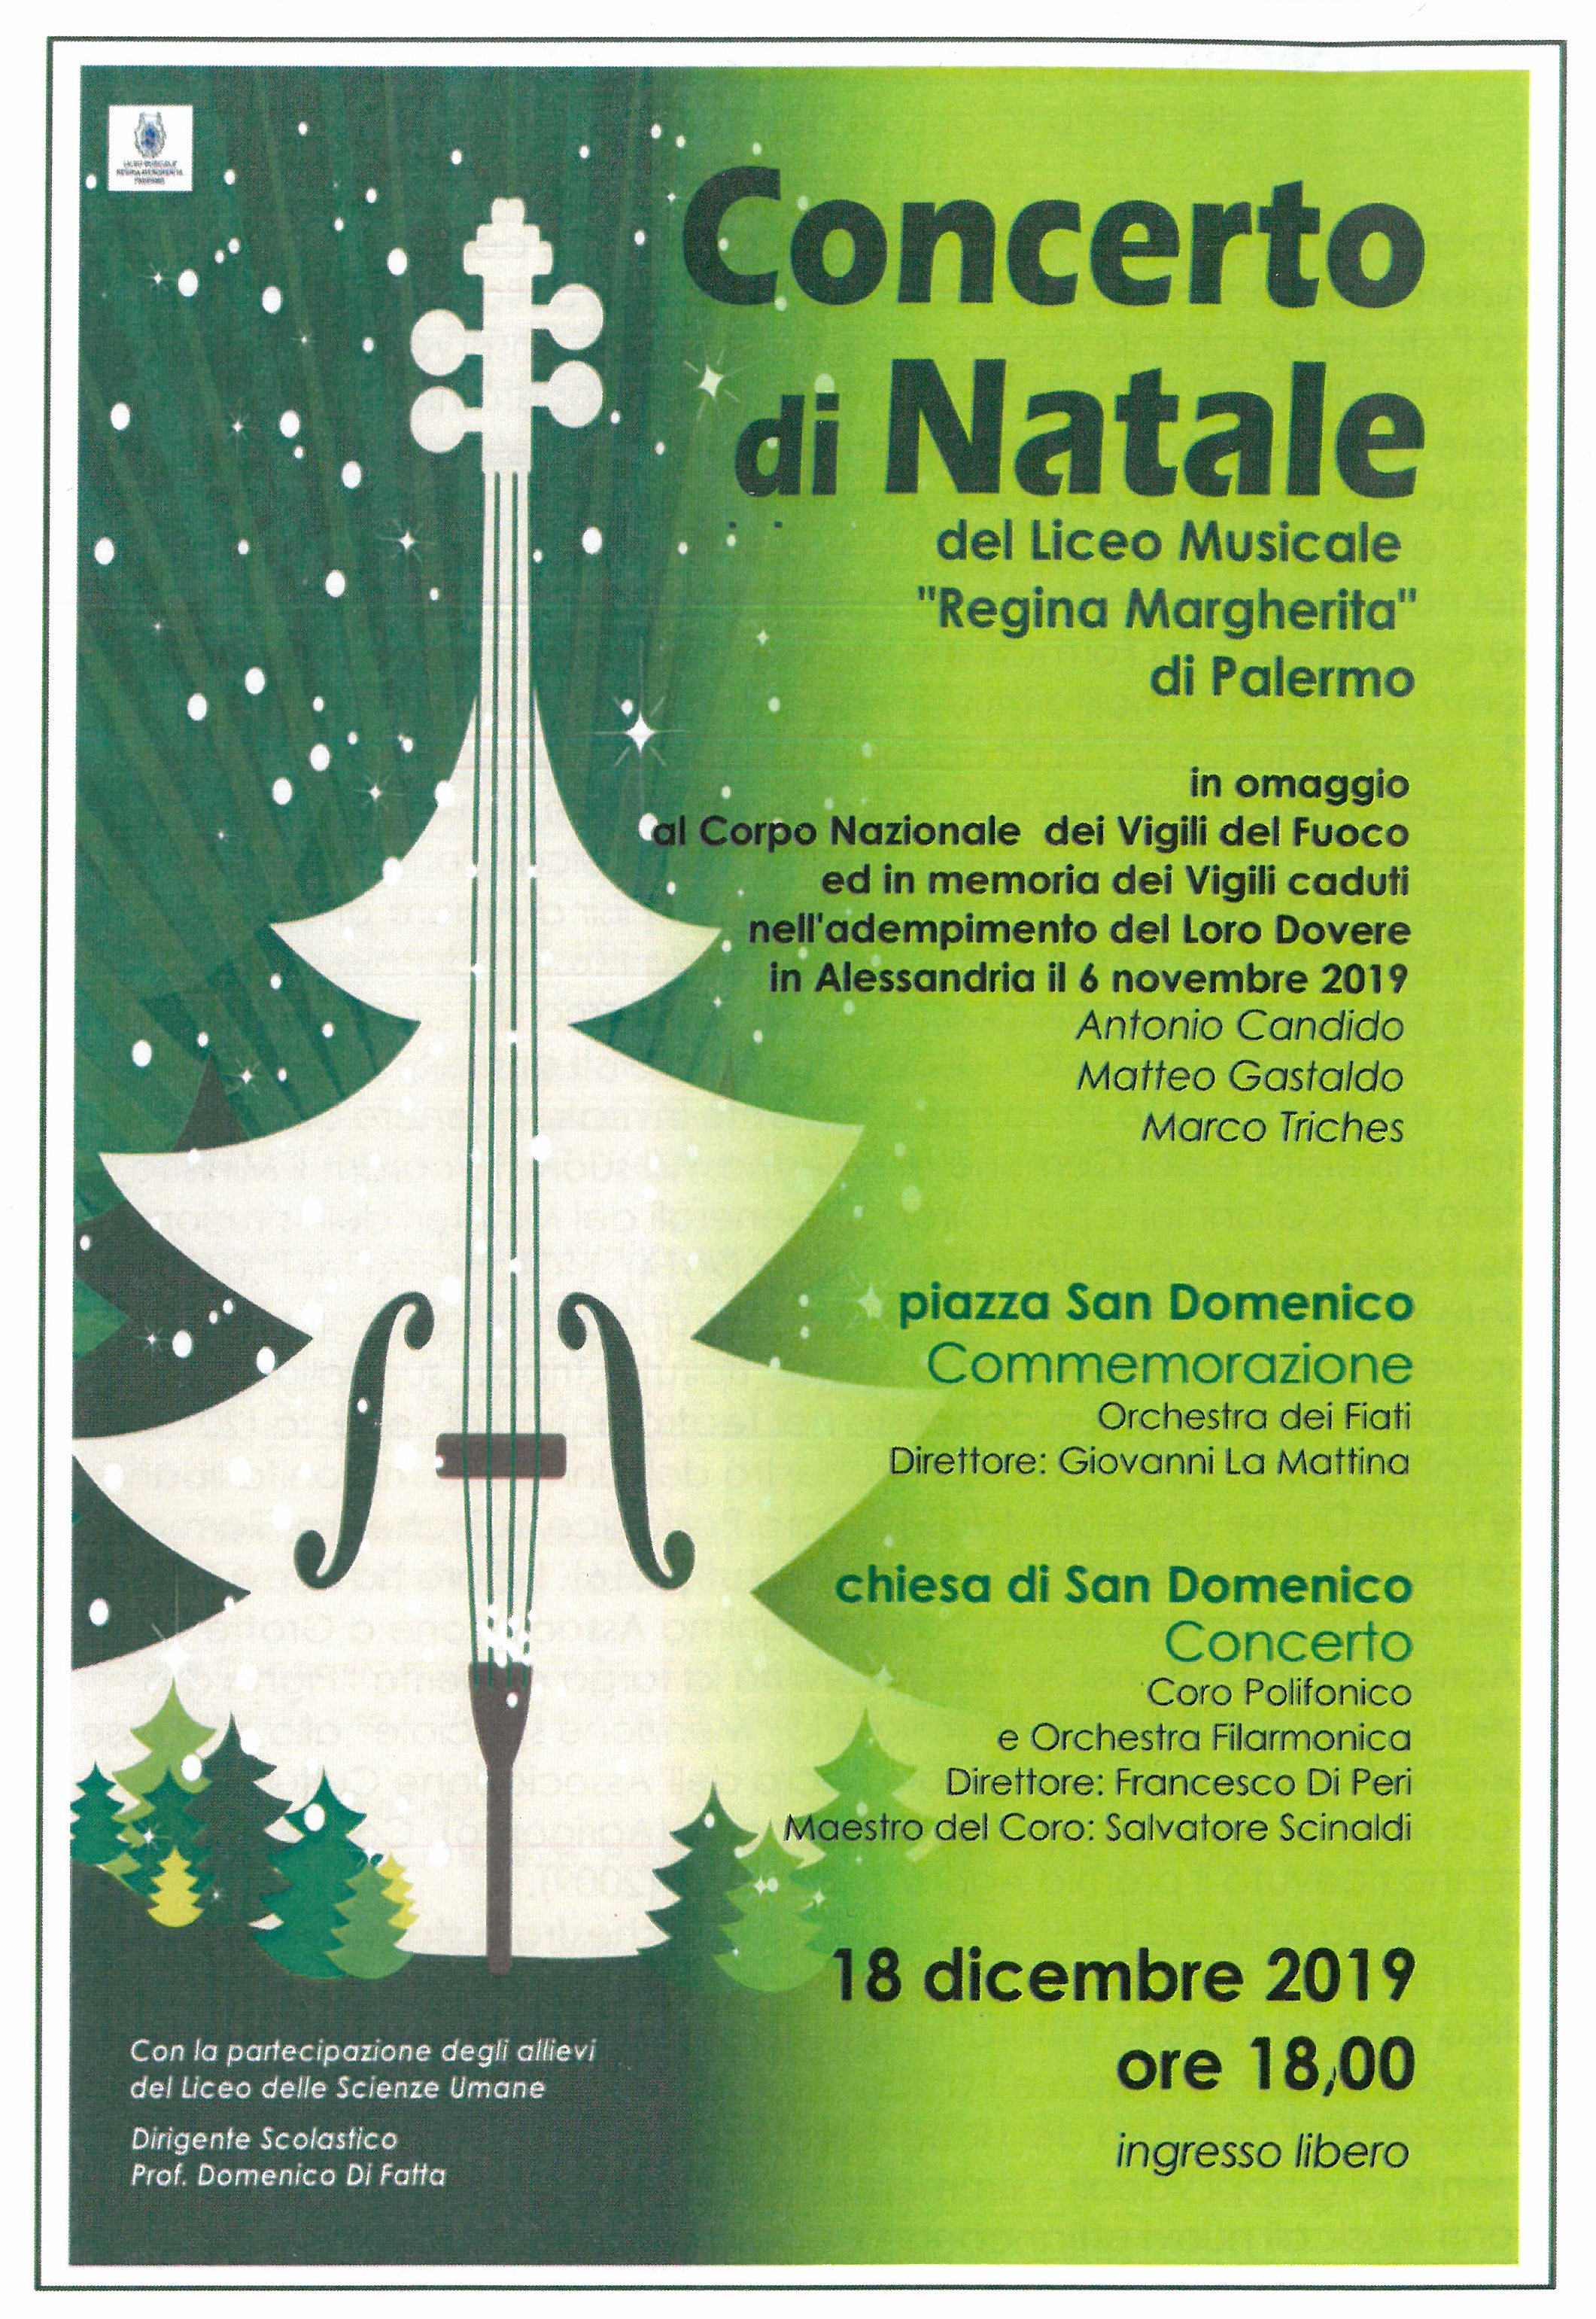 Concerto di Natale del Liceo Musicale "Regina Margherita" il 18 Dicembre nella Chiesa di san Domenico di Palermo